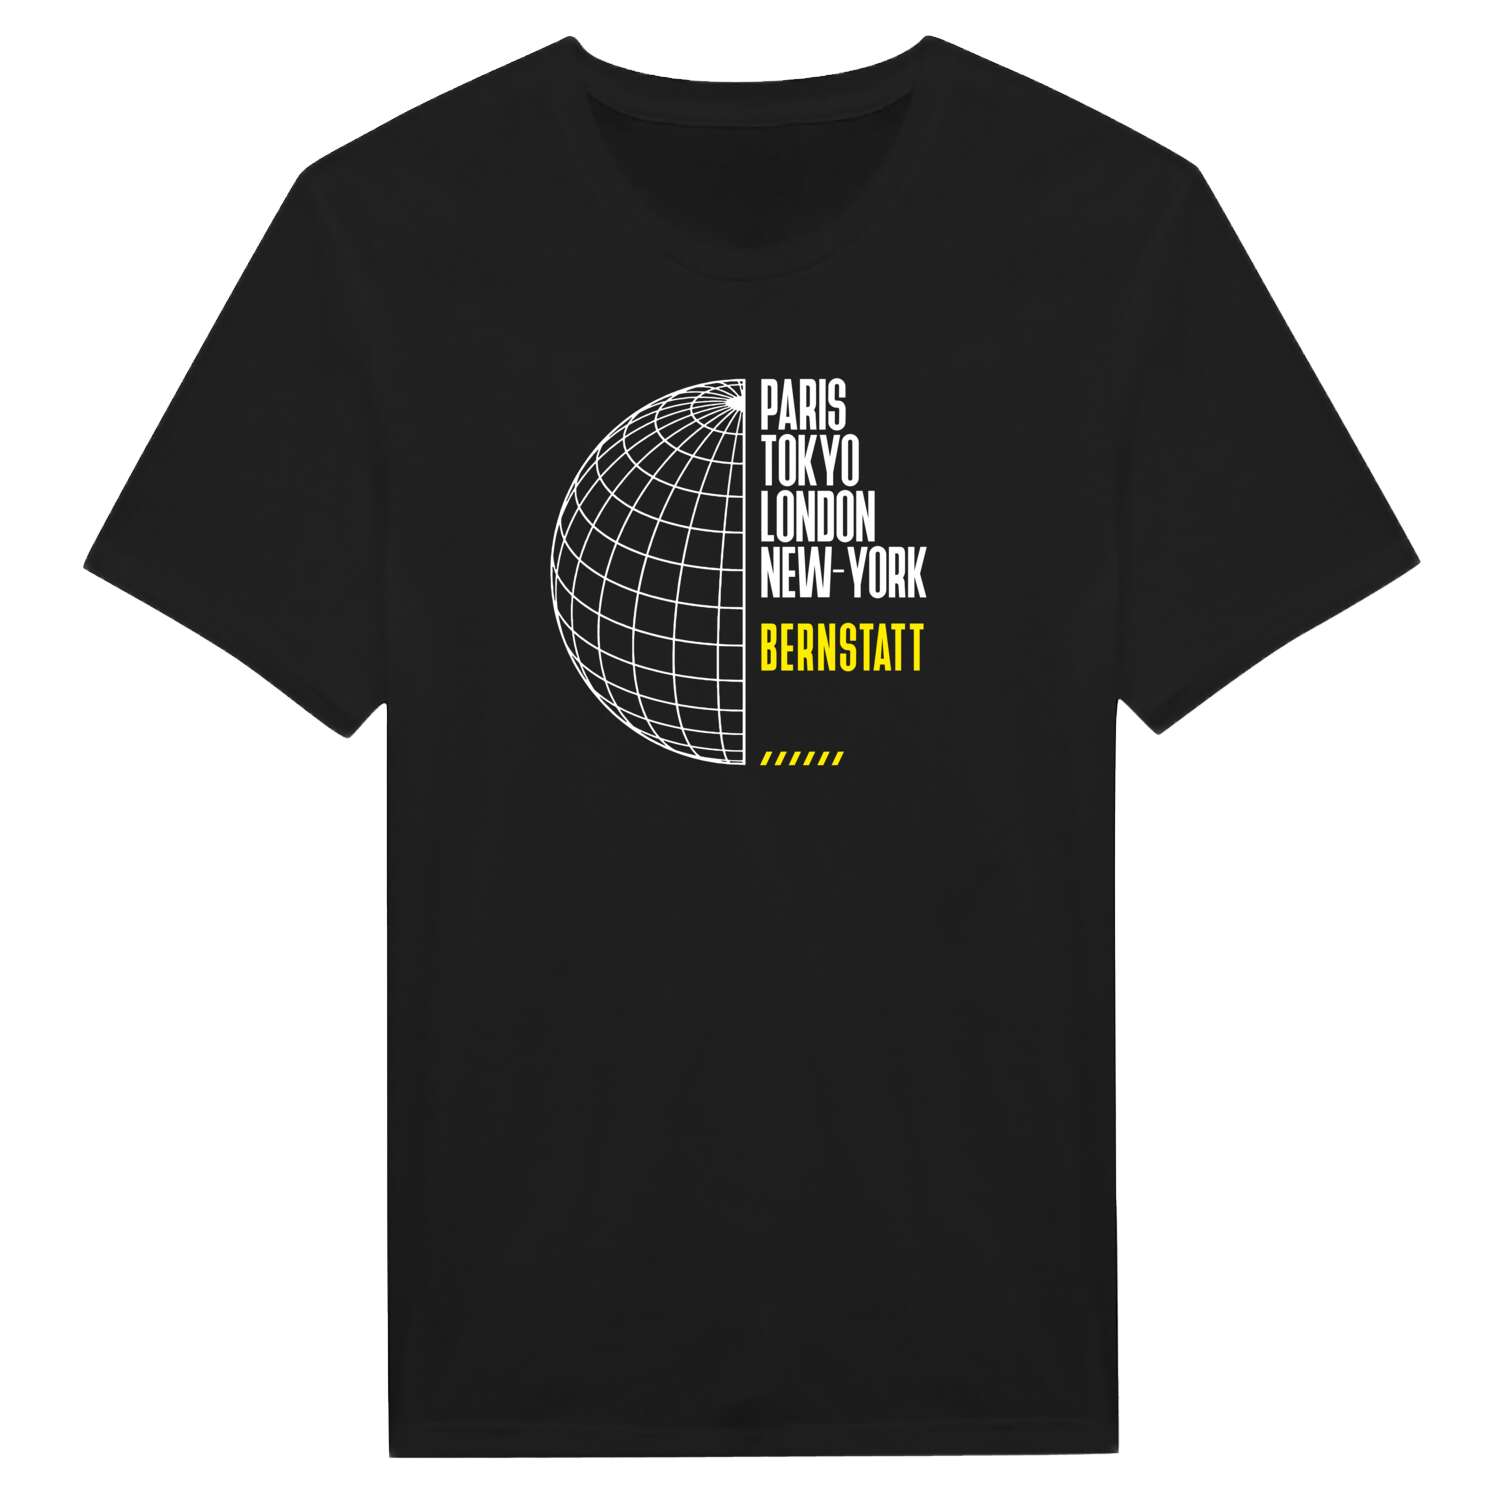 Bernstatt T-Shirt »Paris Tokyo London«